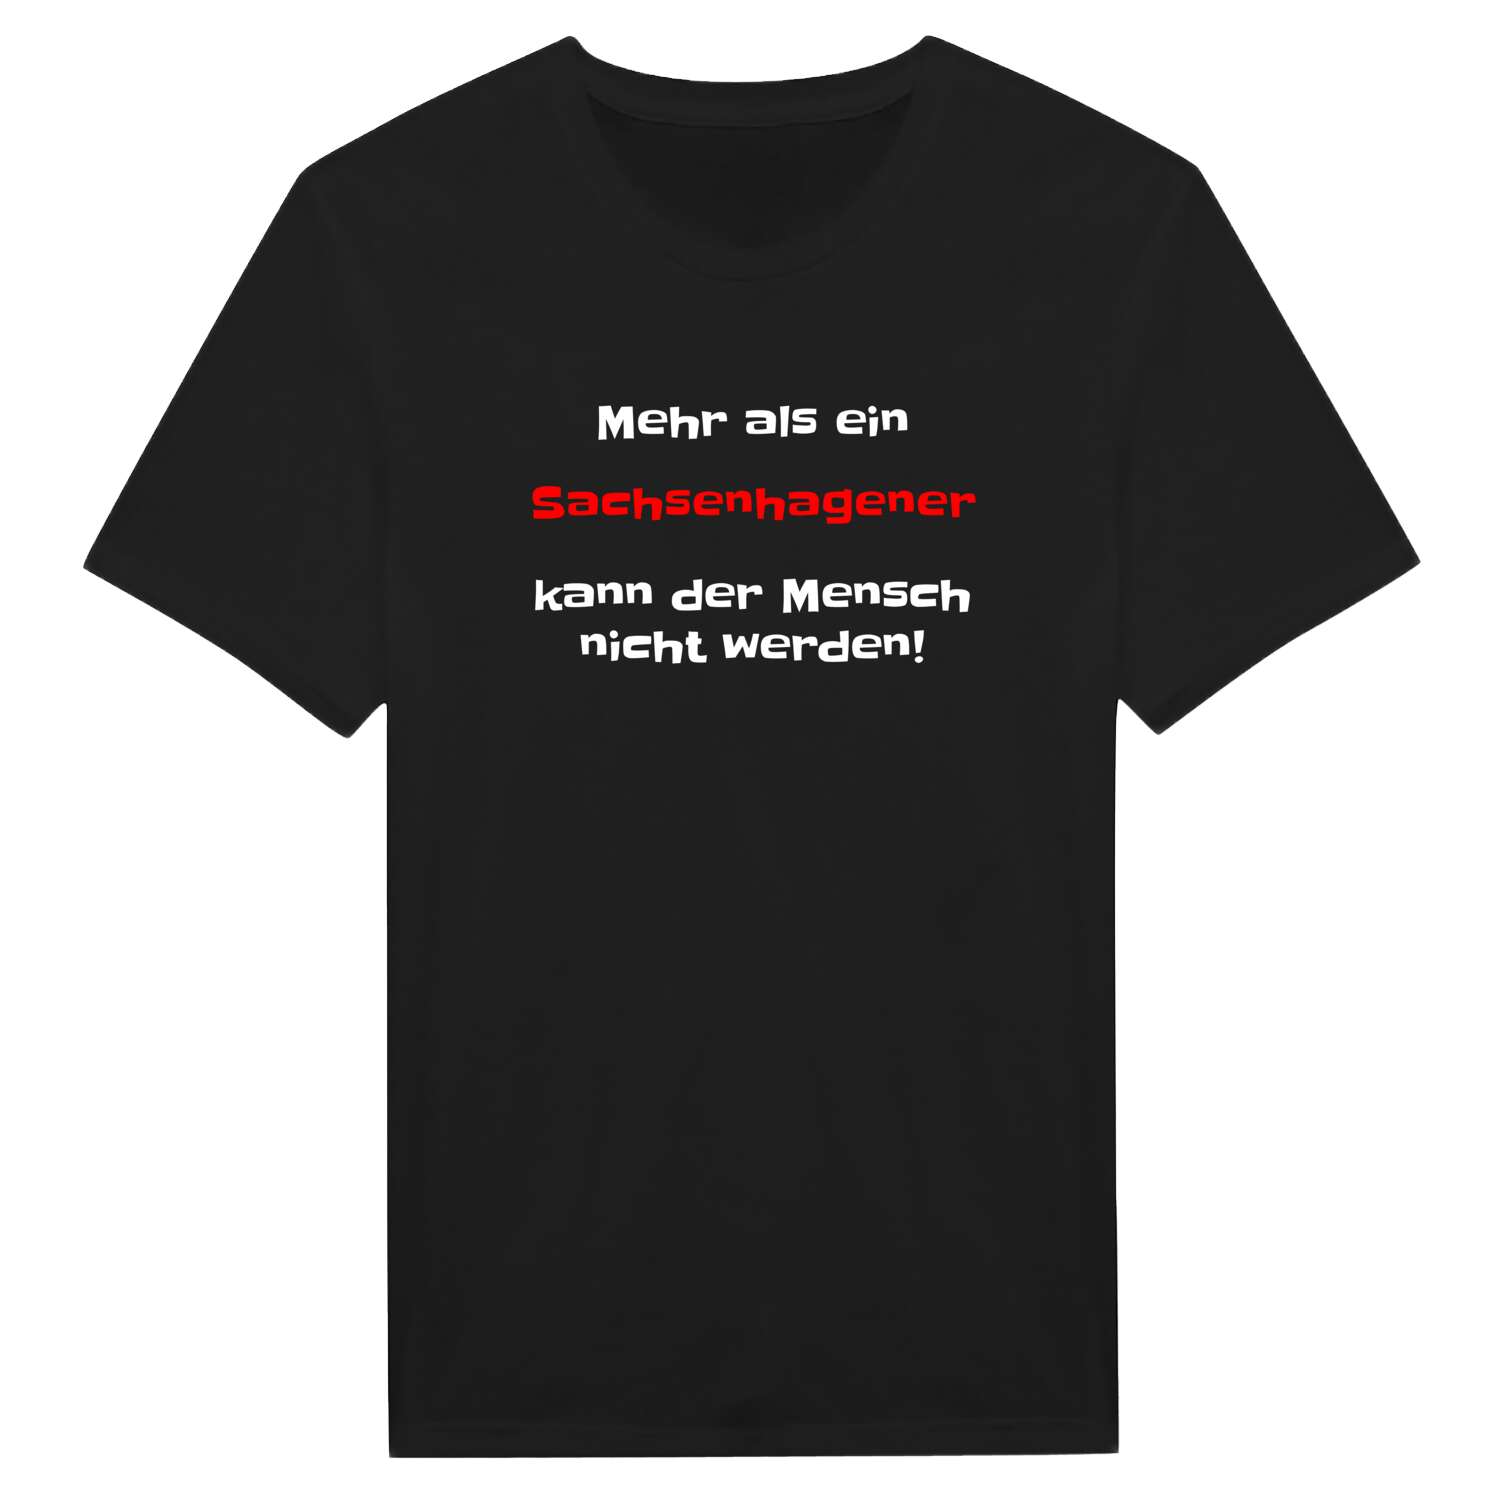 Sachsenhagen T-Shirt »Mehr als ein«